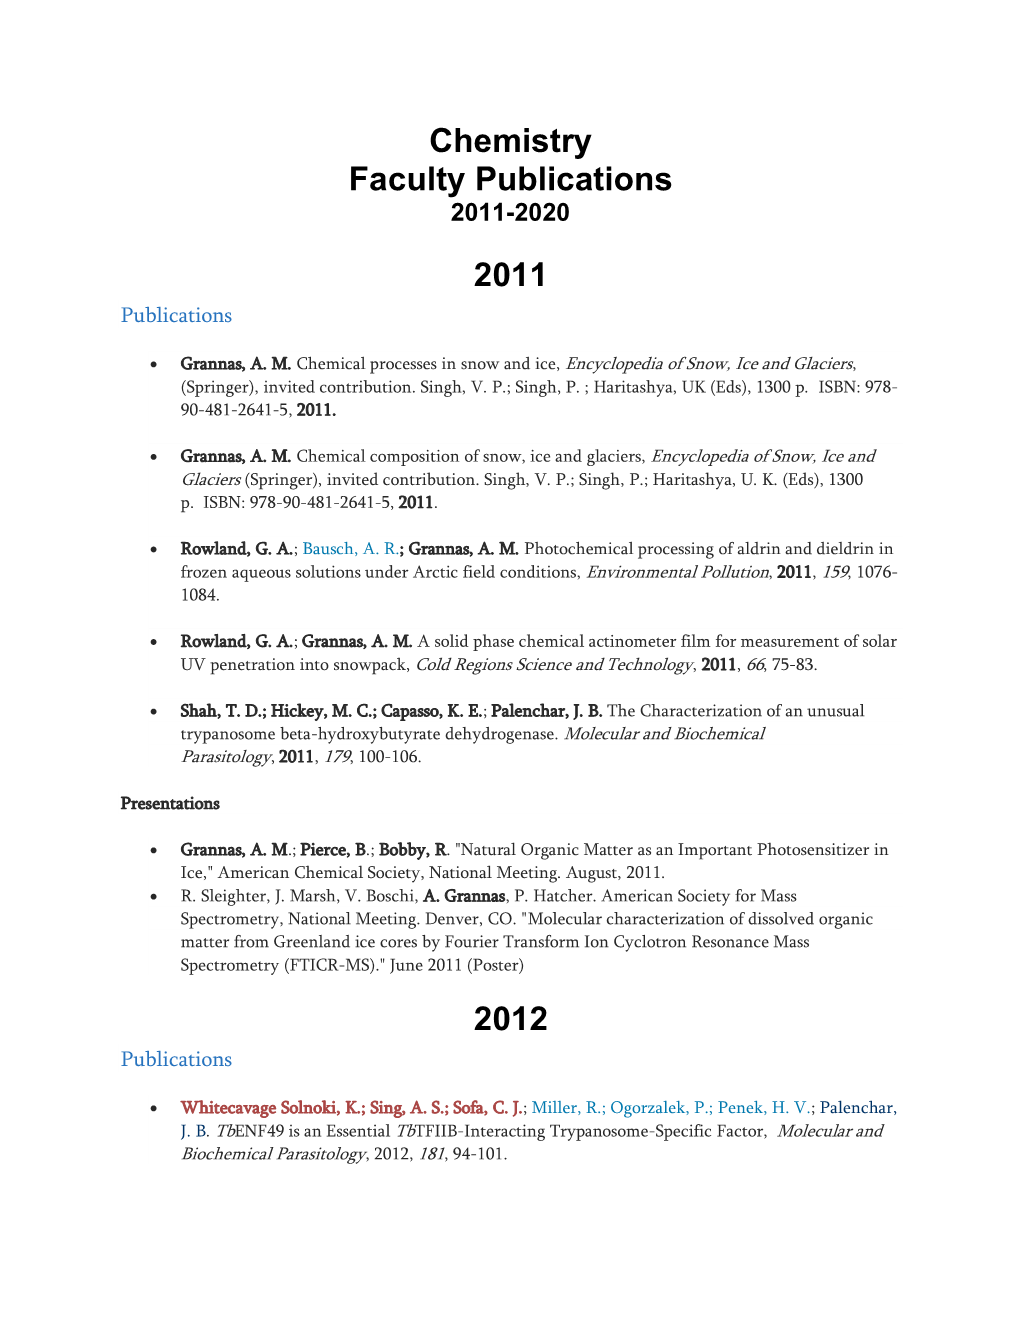 Villanova Chemistry Faculty Publications 2011-2020